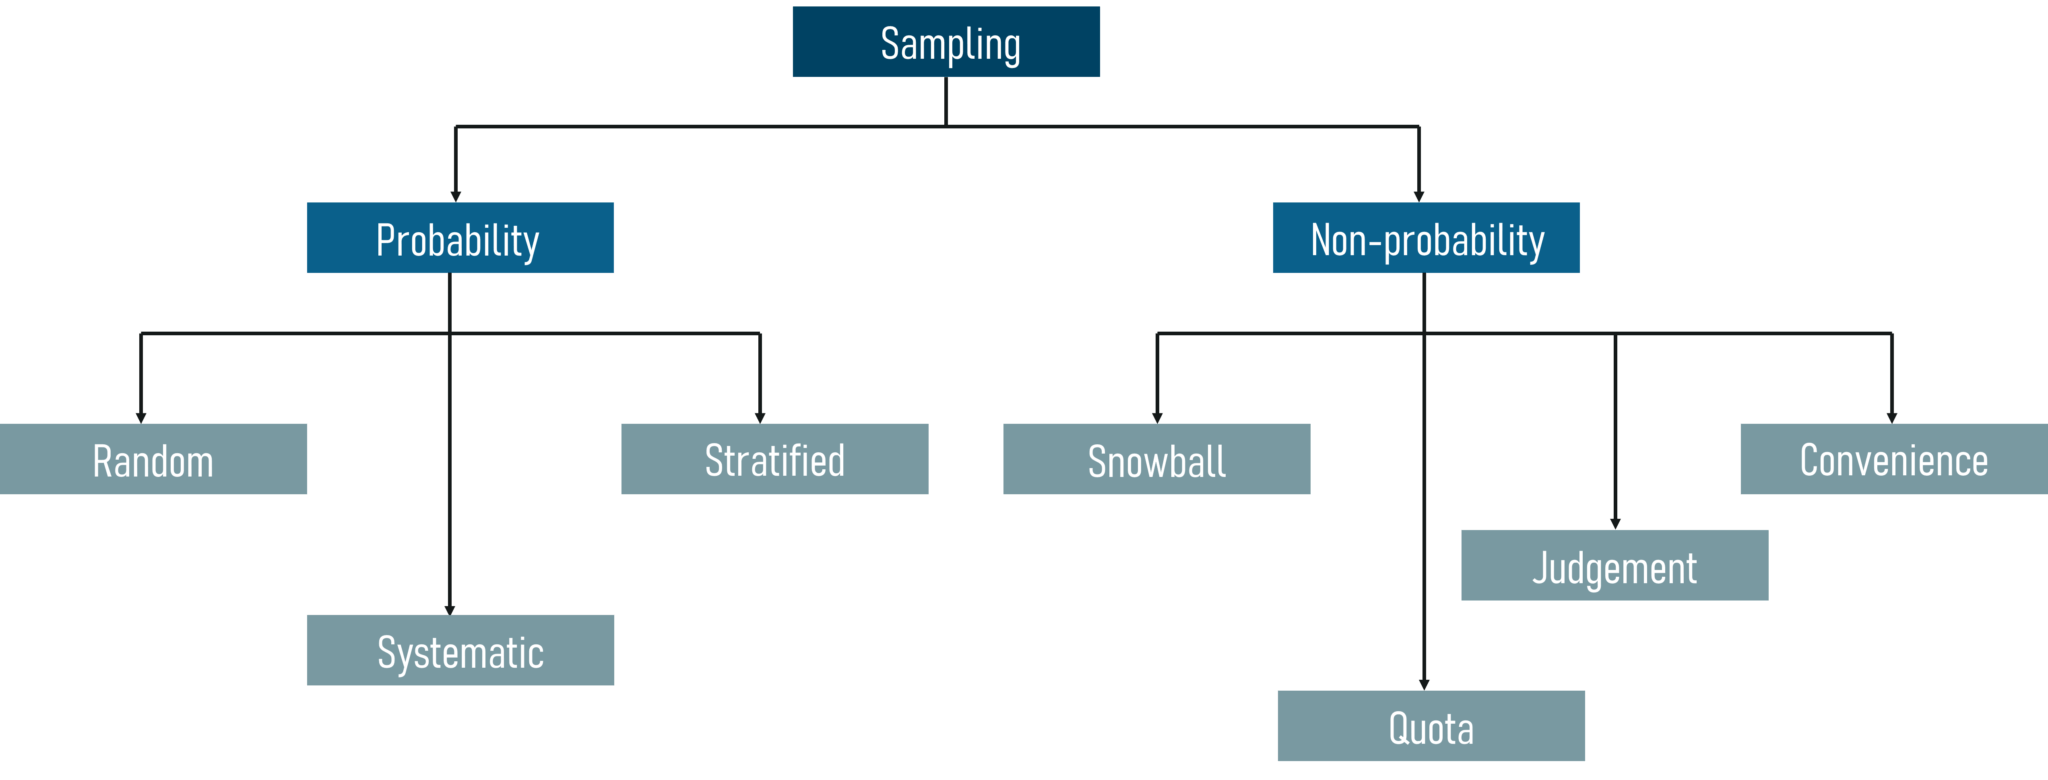 Sampling-Techniques-Statistics-and-Probability-Edureka.png